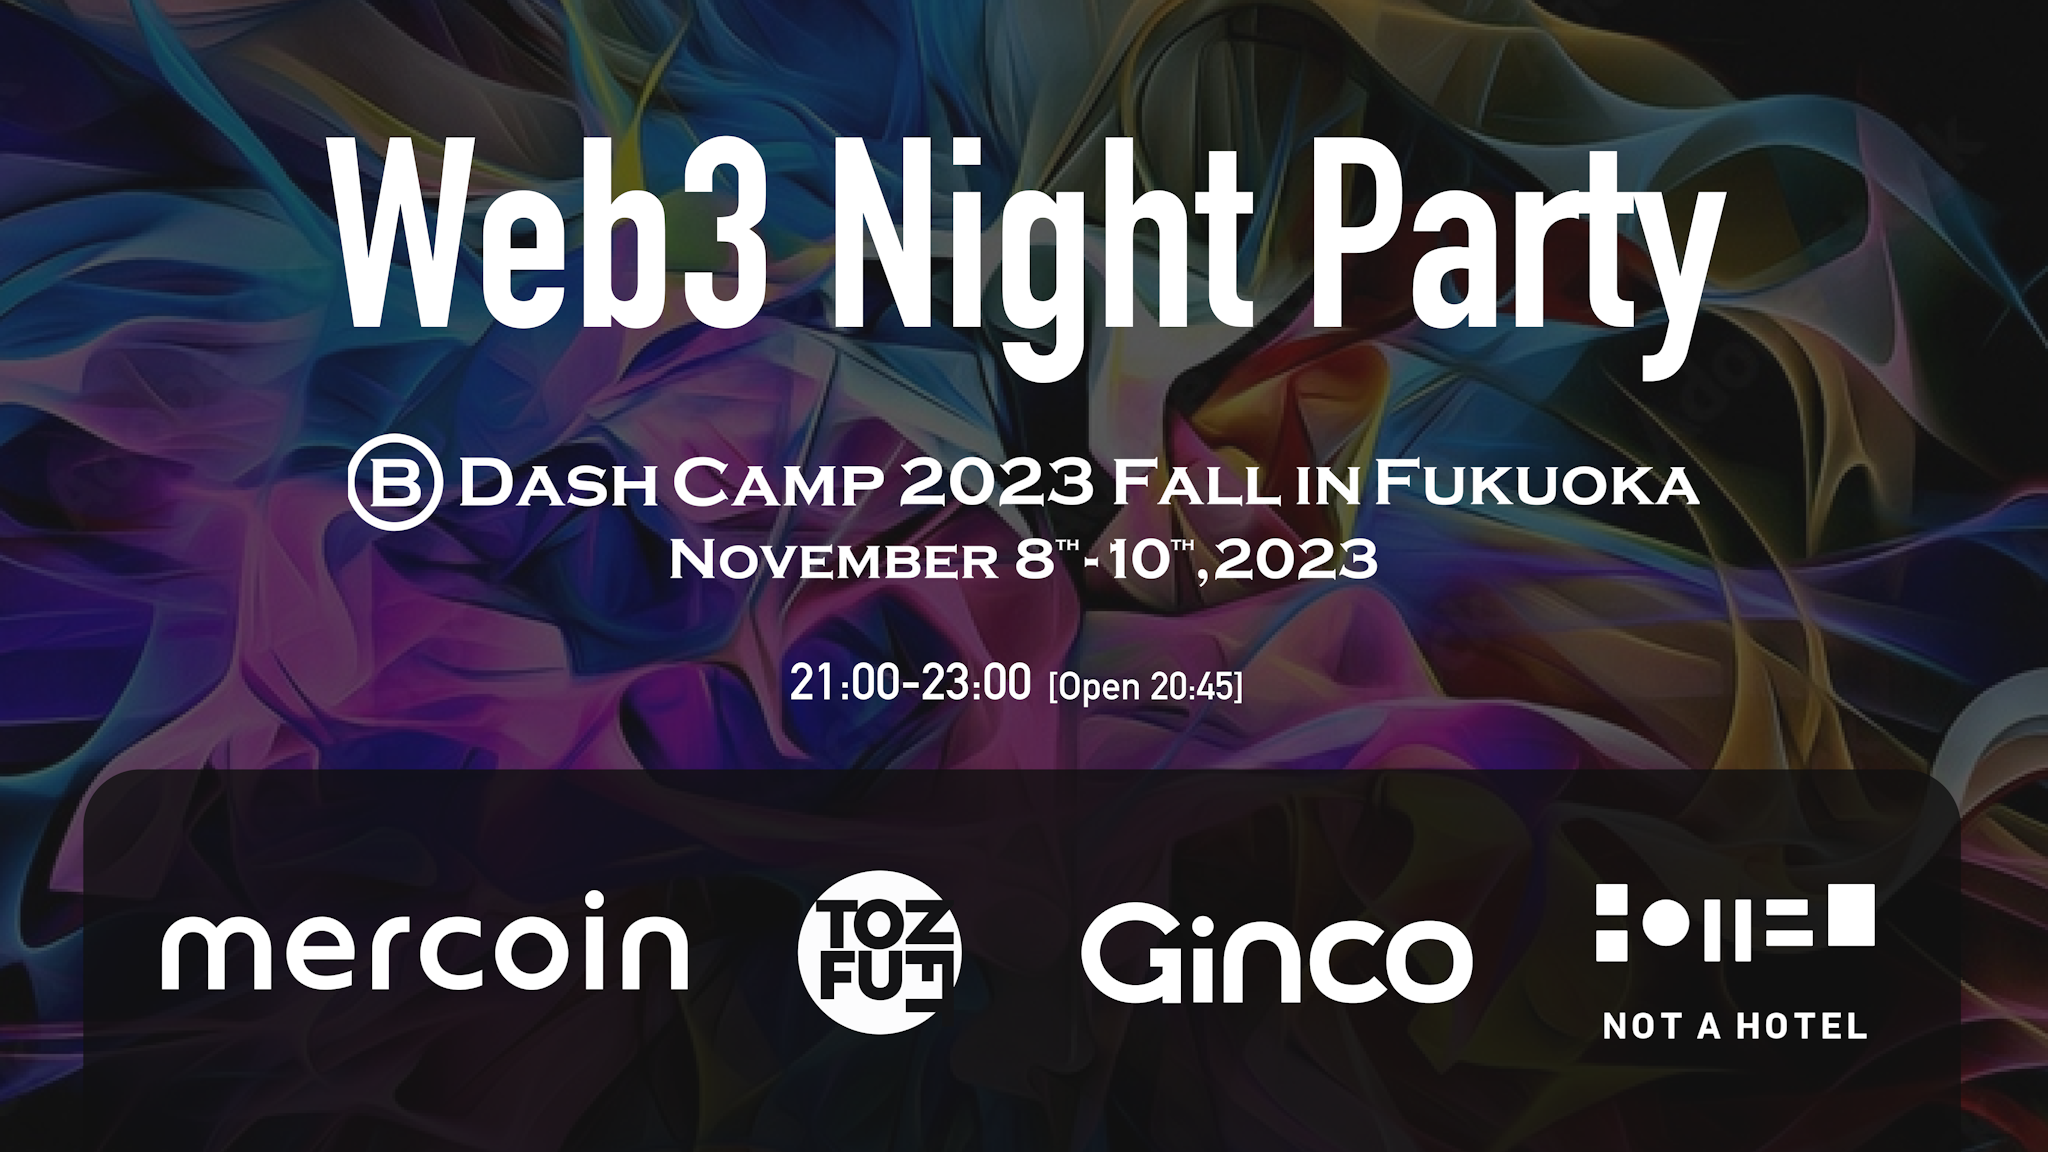 2023.11.6【プレスリリース】B Dash Camp 2023 Fall in Fukuokaにおけるサイドイベント開催